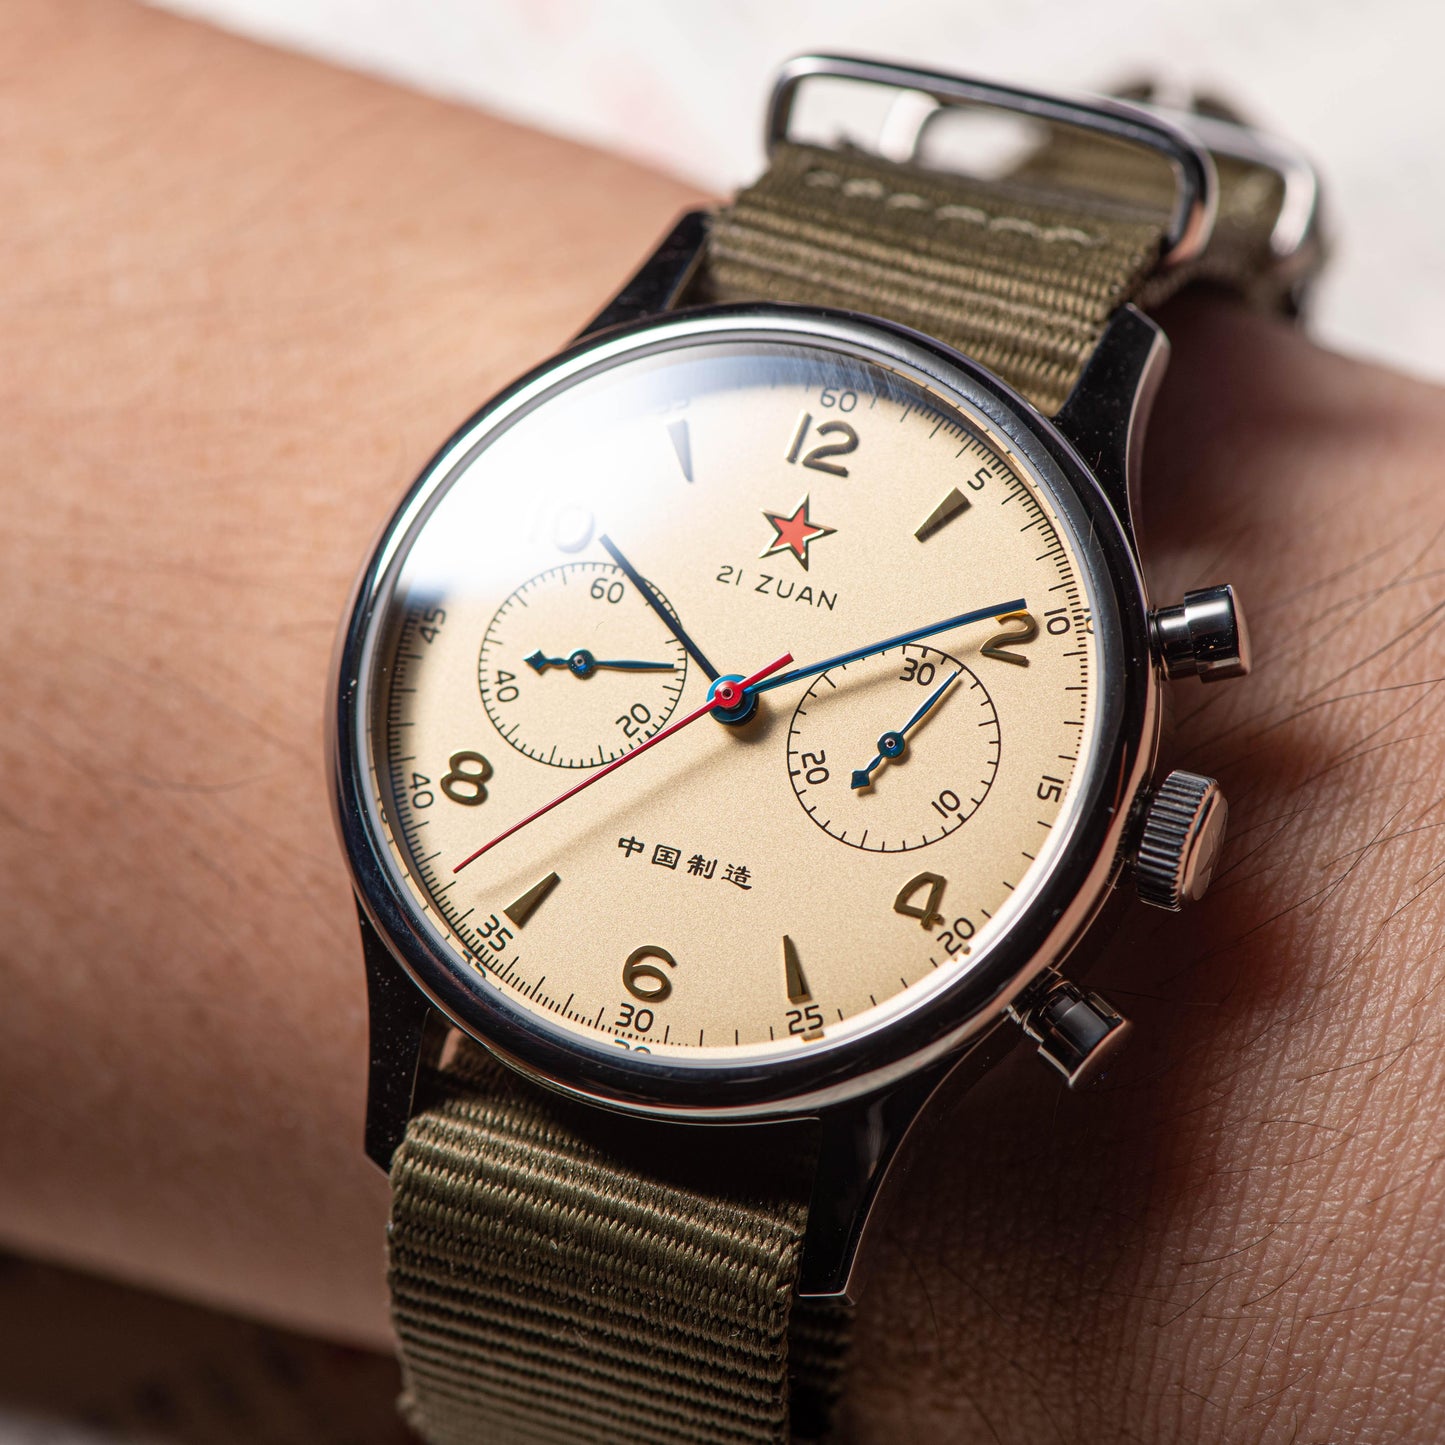 Seagull Pilot ST19 movement mechanical men's watch sapphire large dial waterproof men's watch 1963 - Murphy Johnson Watches Co.